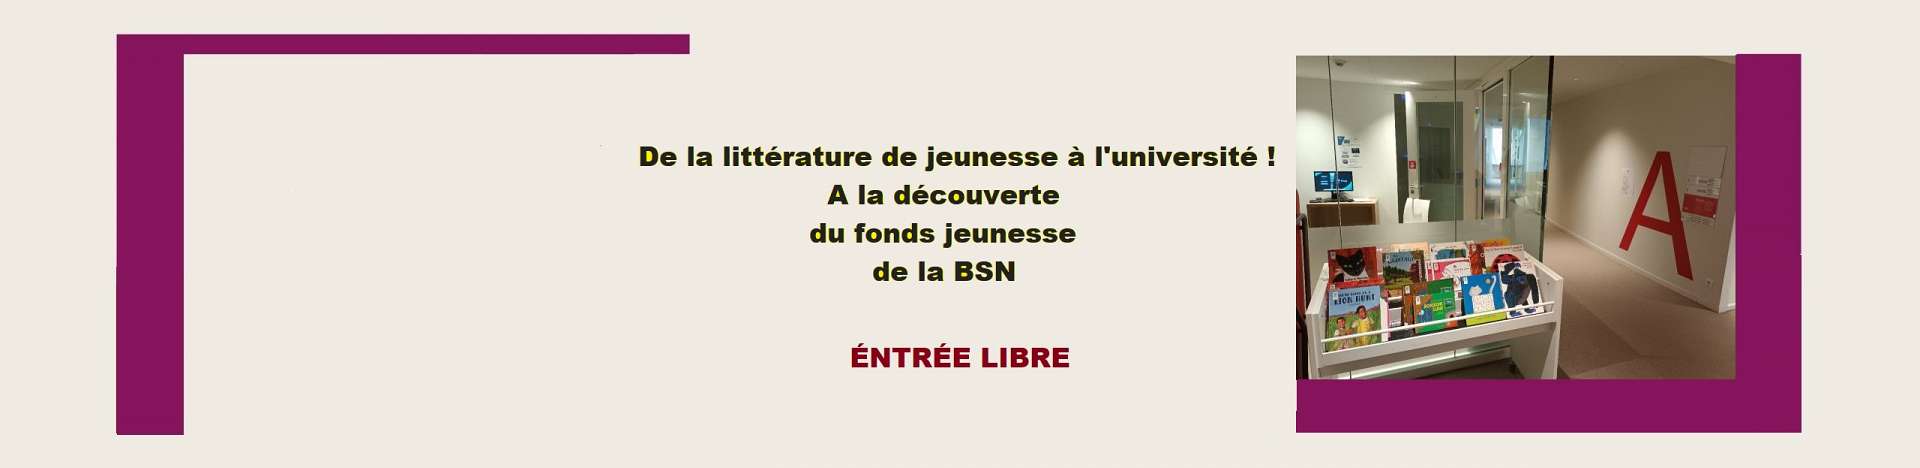 banniere-rs--site-1-litterature-jeunesse.jpg